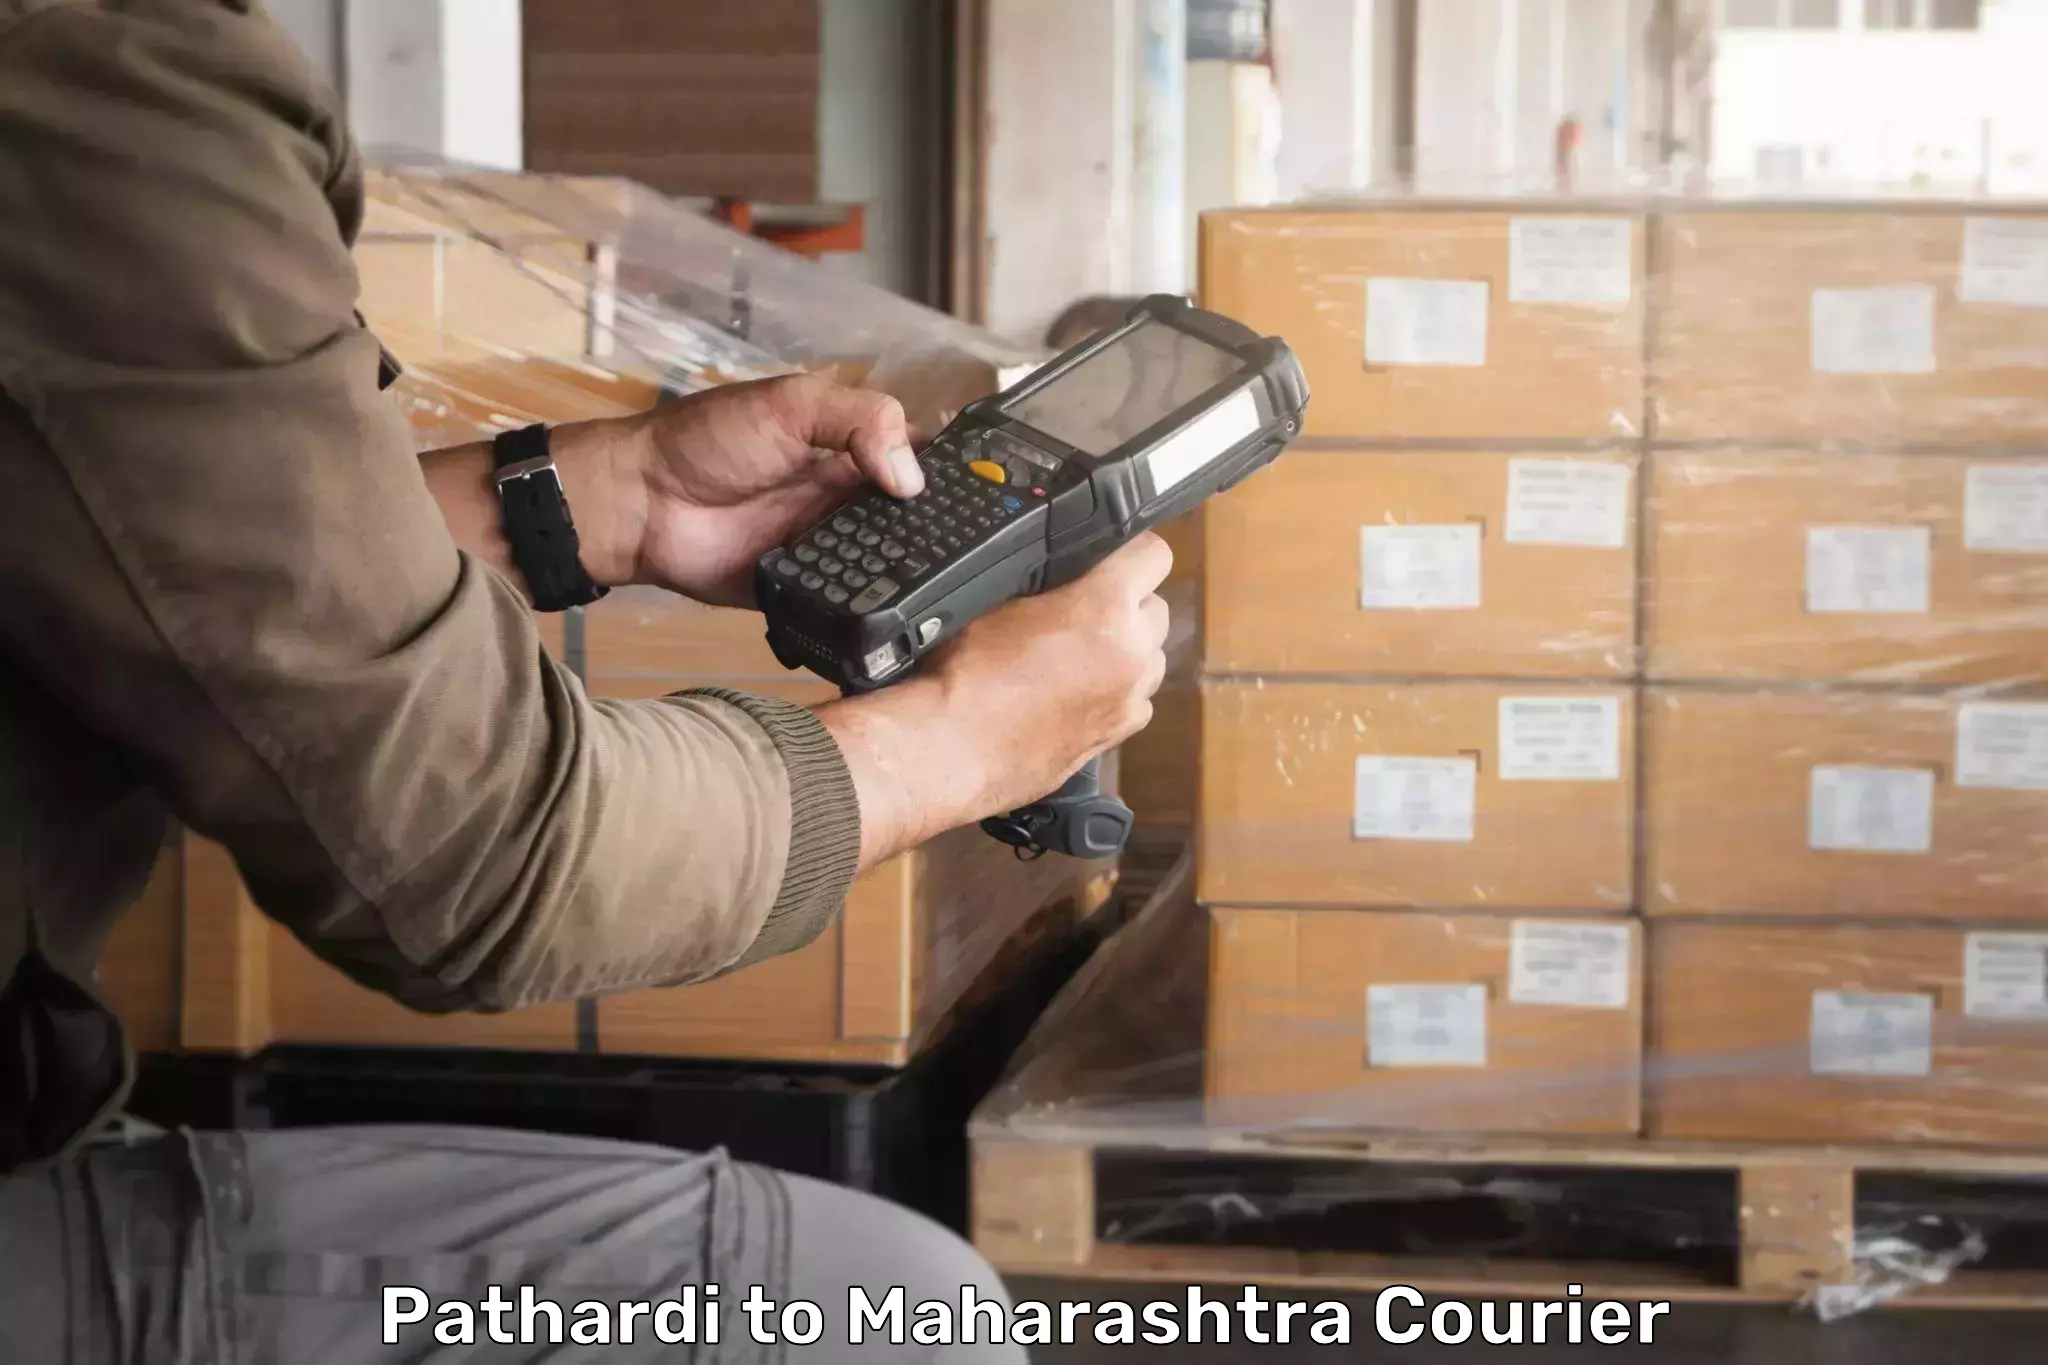 Professional courier handling Pathardi to Sawantwadi